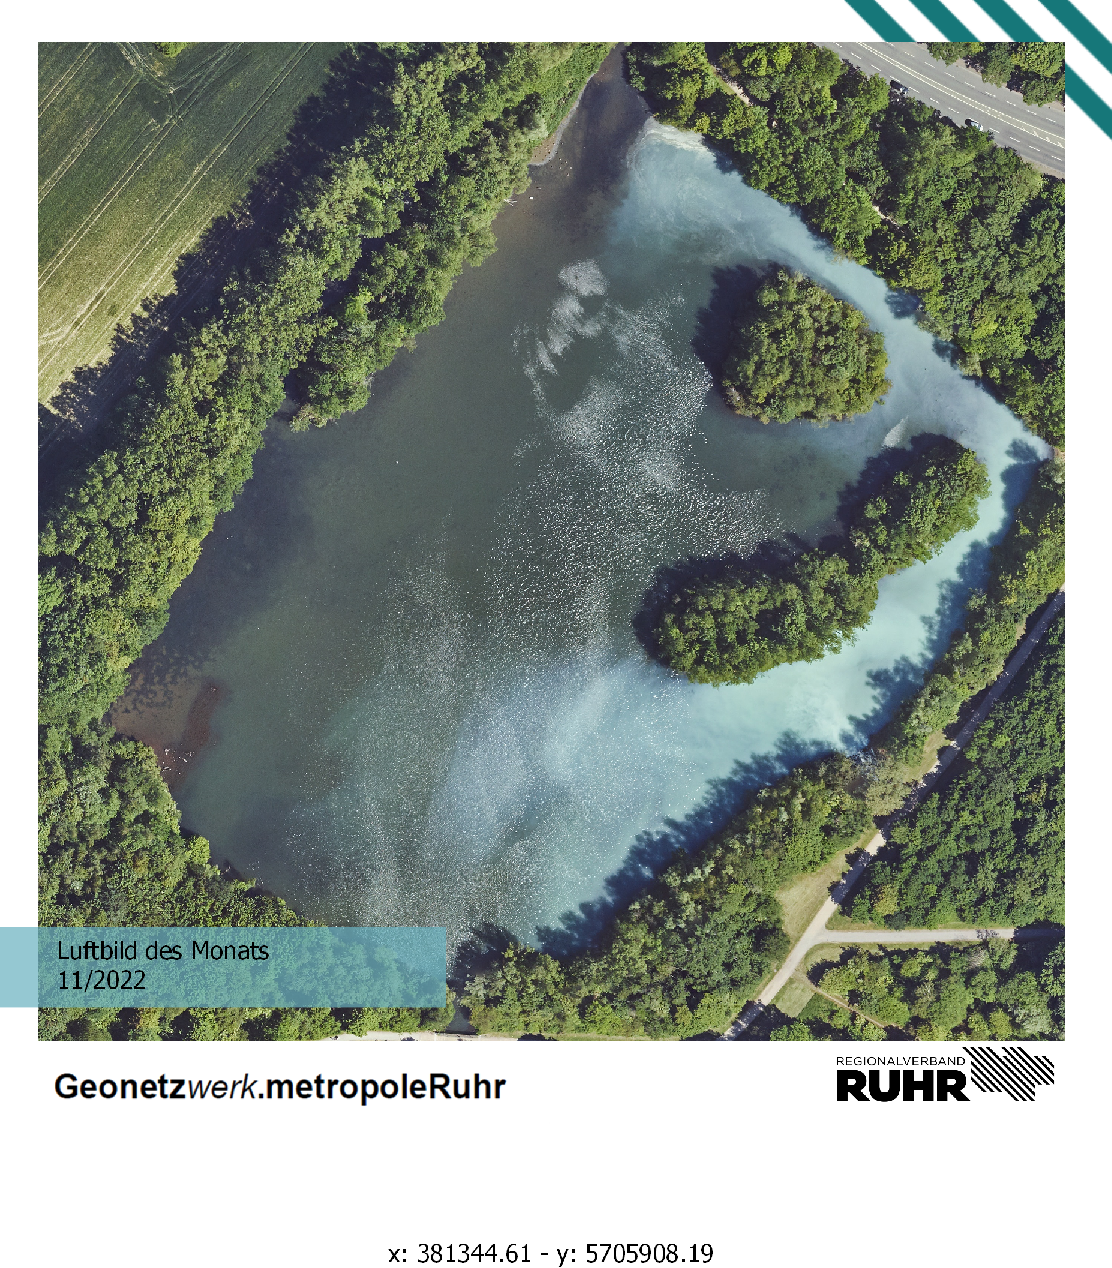 Luftbild des Monats November 2022. Ein Teich mit teilweise hellblauer Einfärbung.